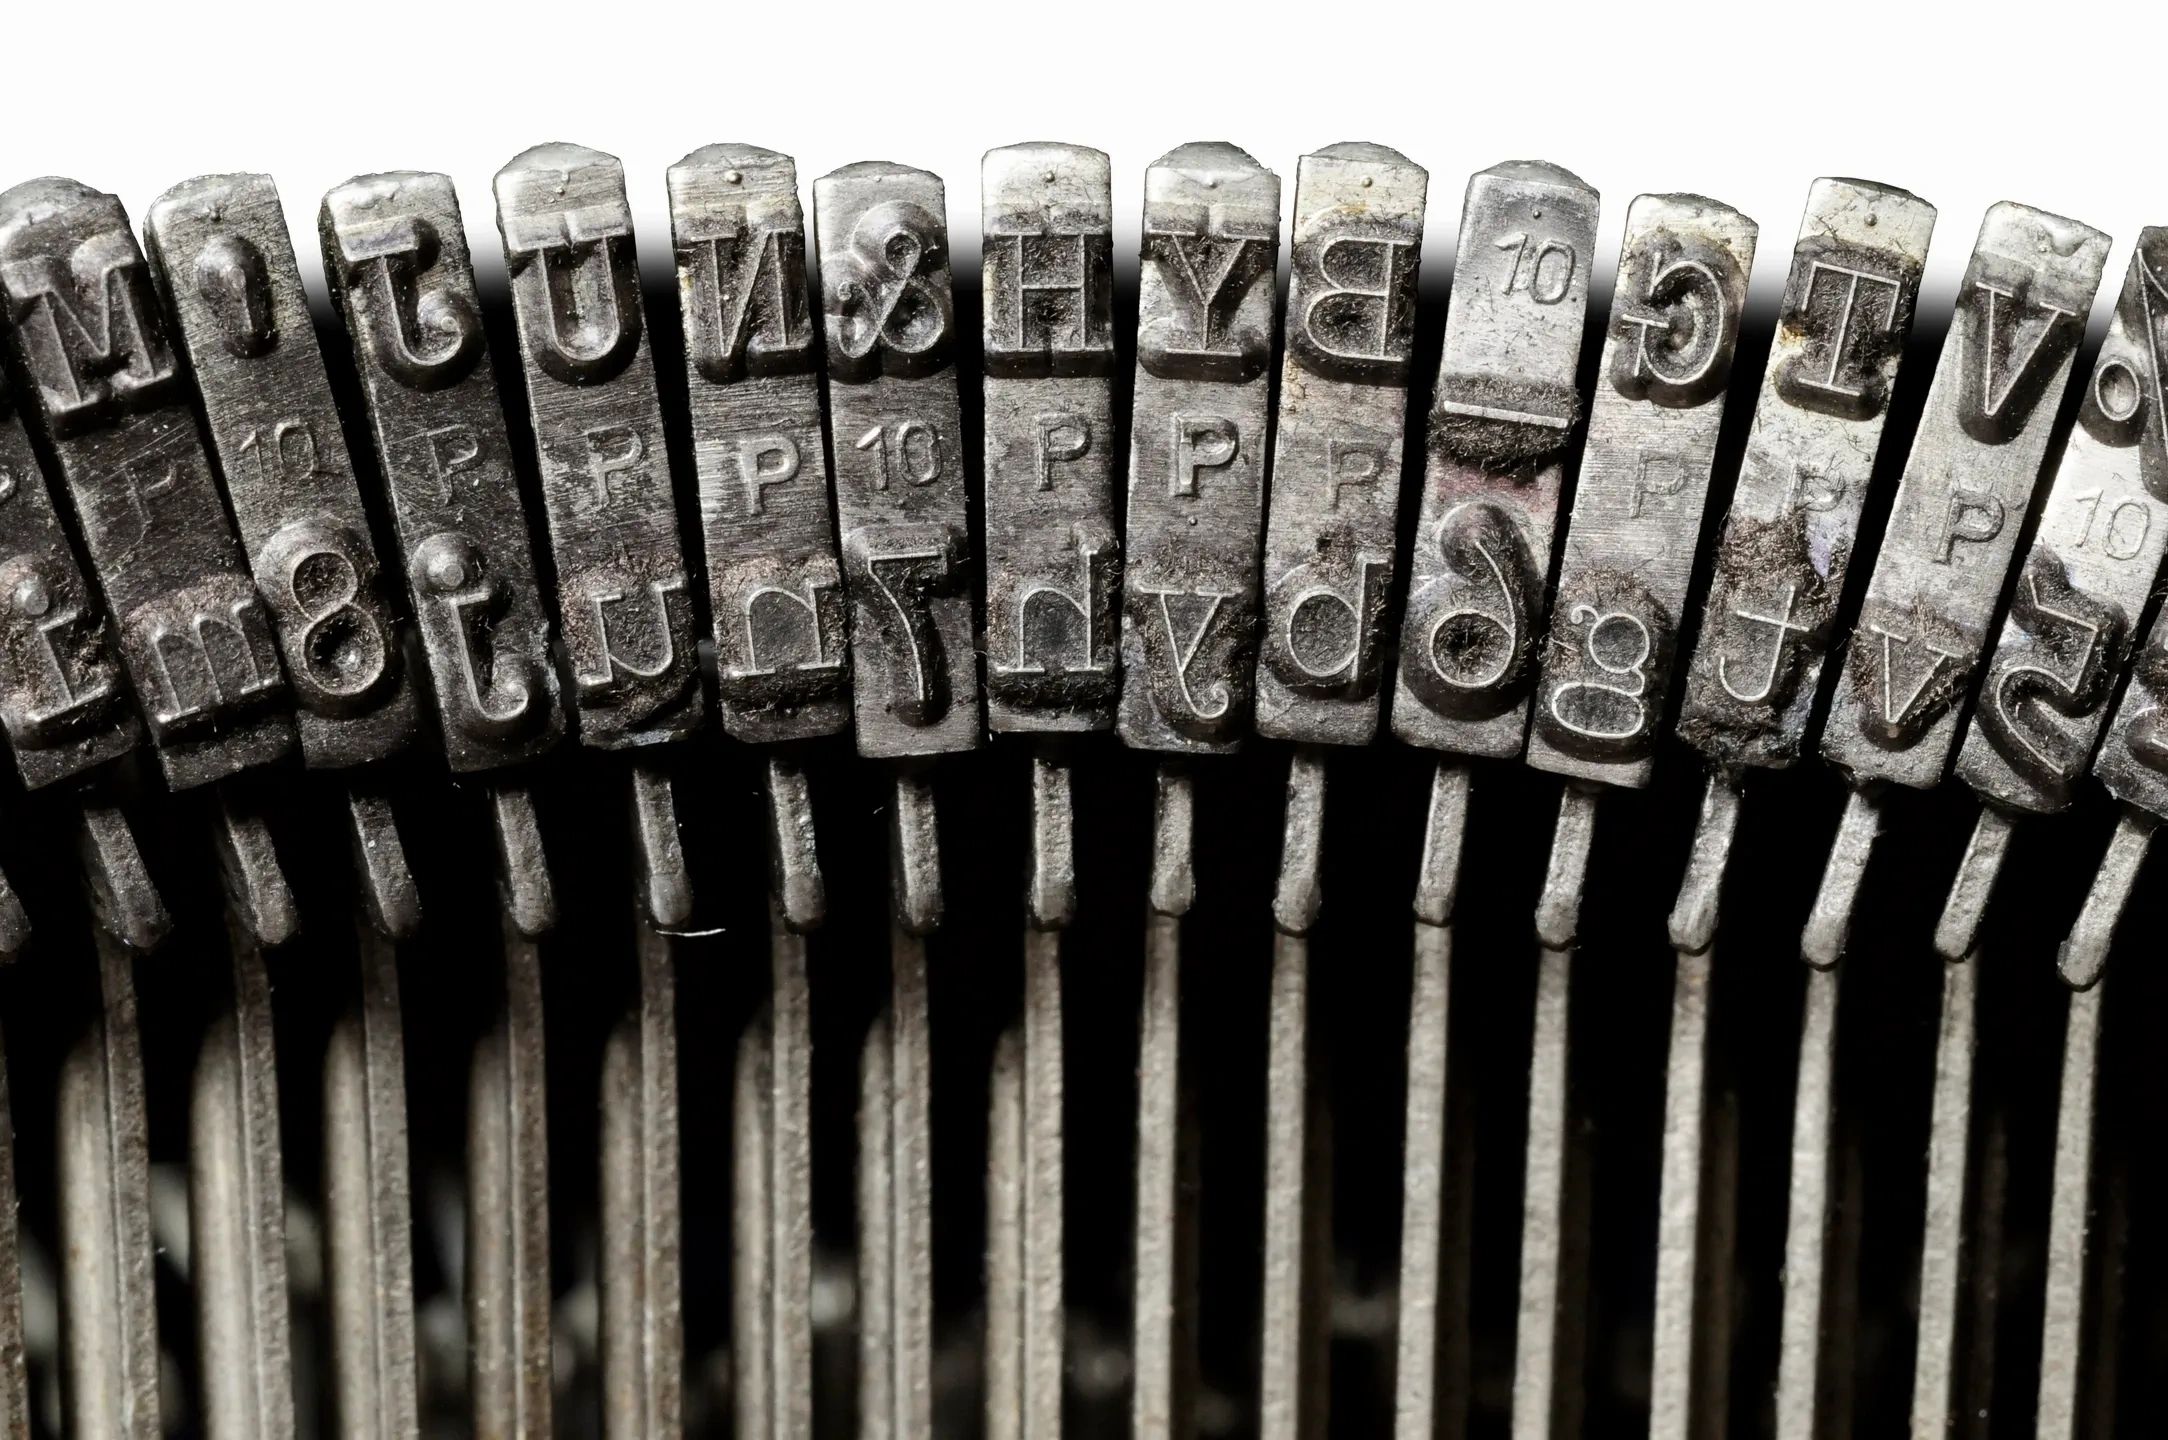 Old typewriter keyboard with striker keys.